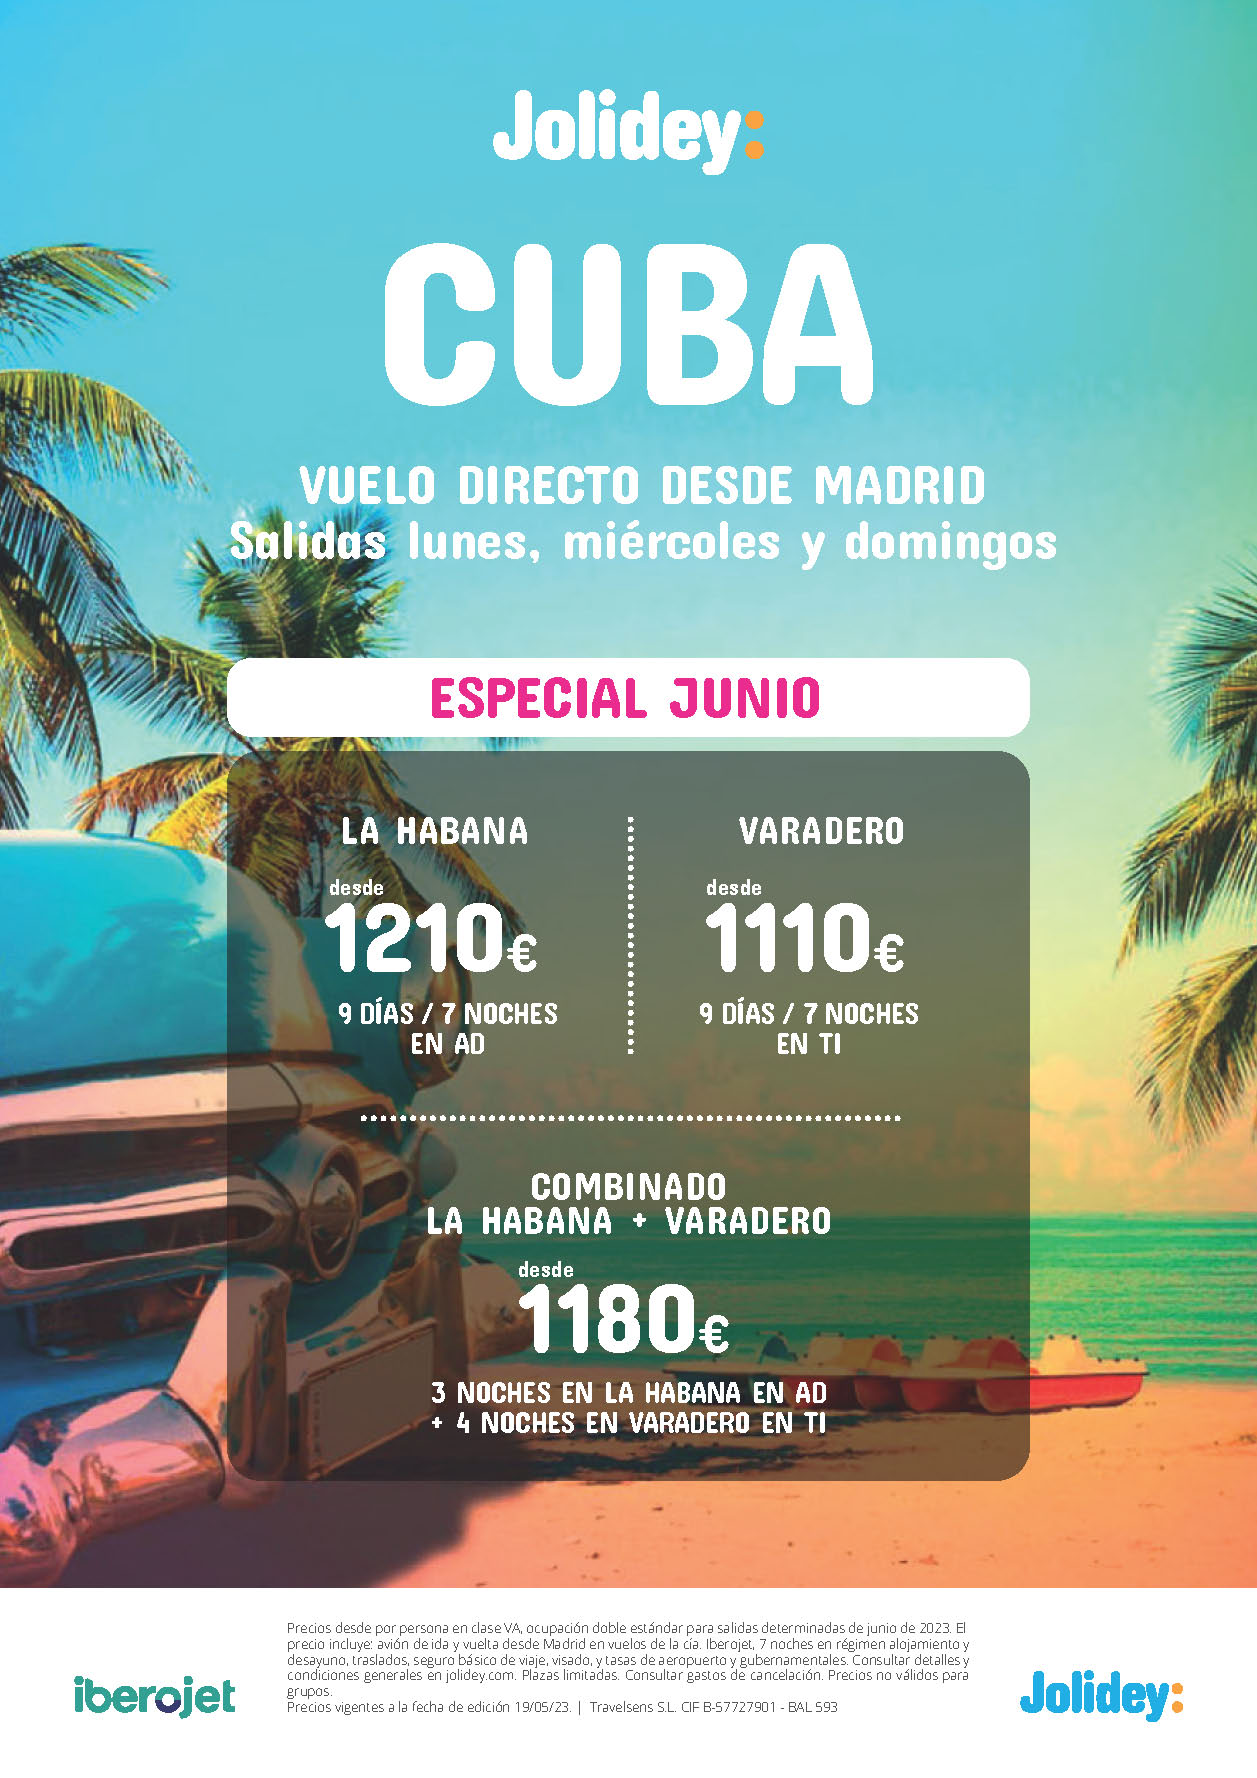 Oferta Jolidey Especial Junio 2023 Cuba Combinado La Habana Varadero 9 dias Todo Incluido salida en vuelo directo desde Madrid